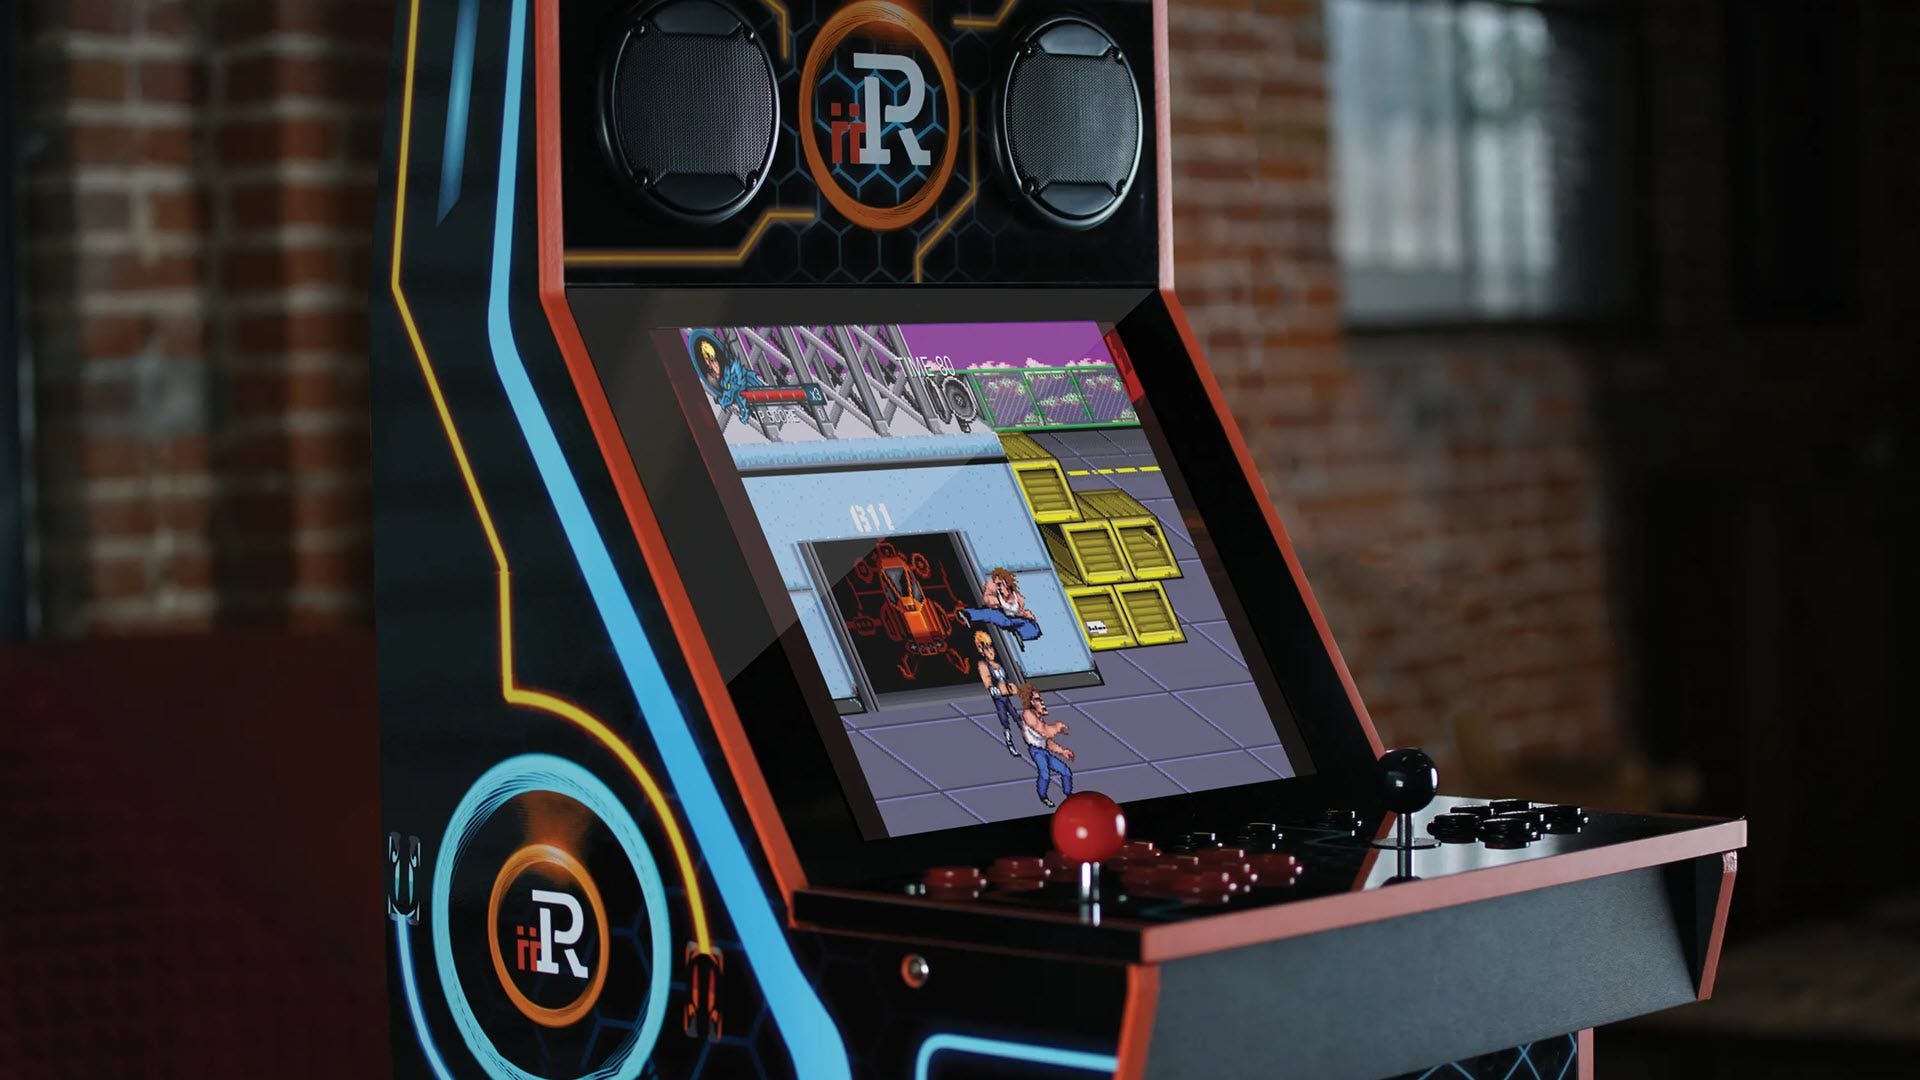 iiRcade's Arcade Cabinet trị giá $ 599 đi kèm với một cửa hàng trò chơi kỹ thuật số